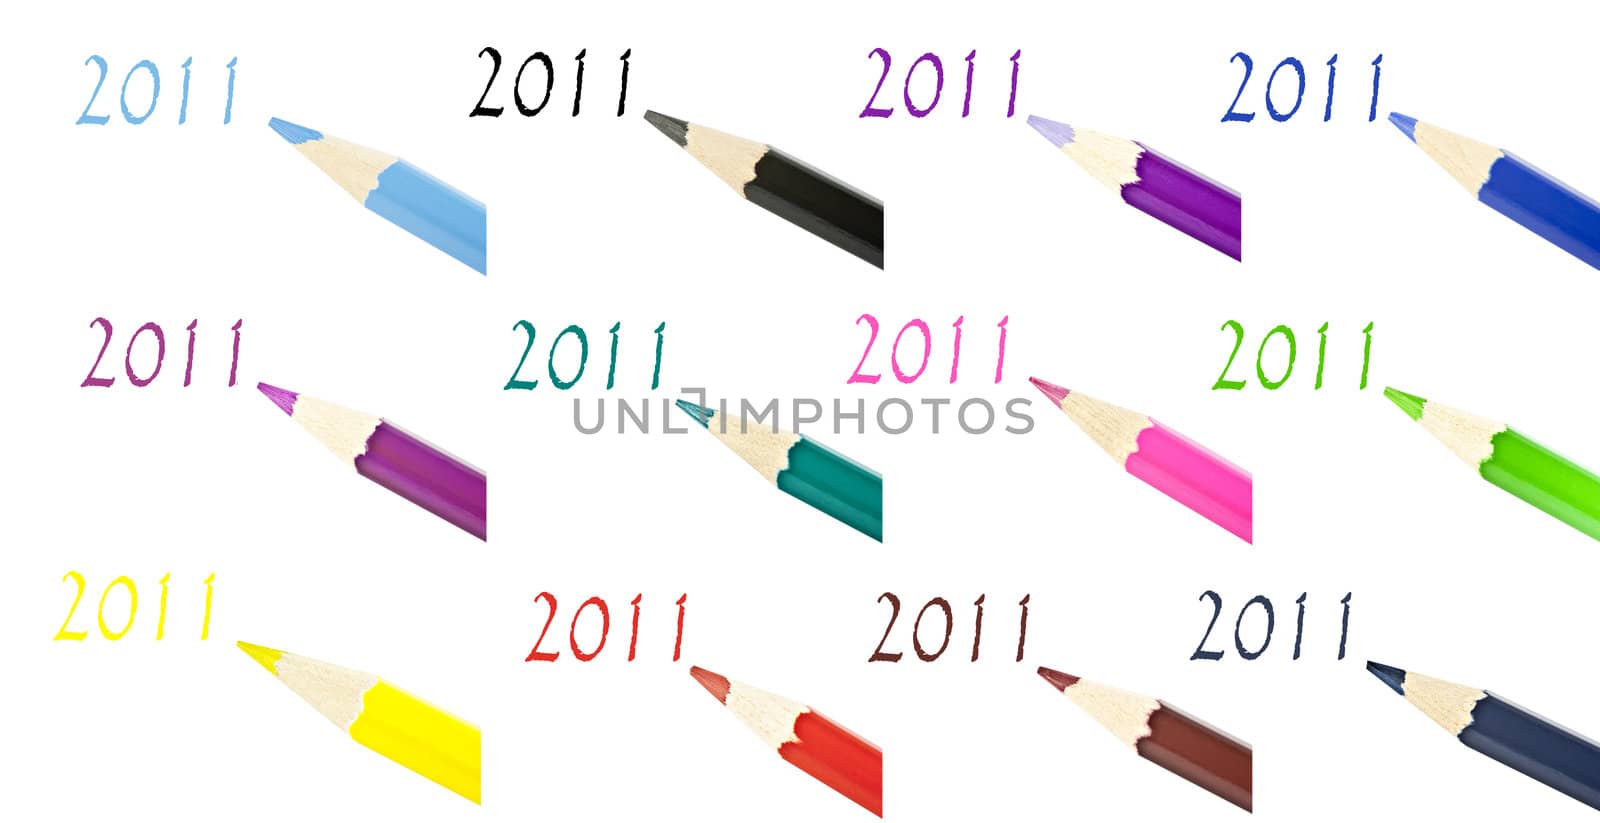 Multi-color pencil composition by gitusik